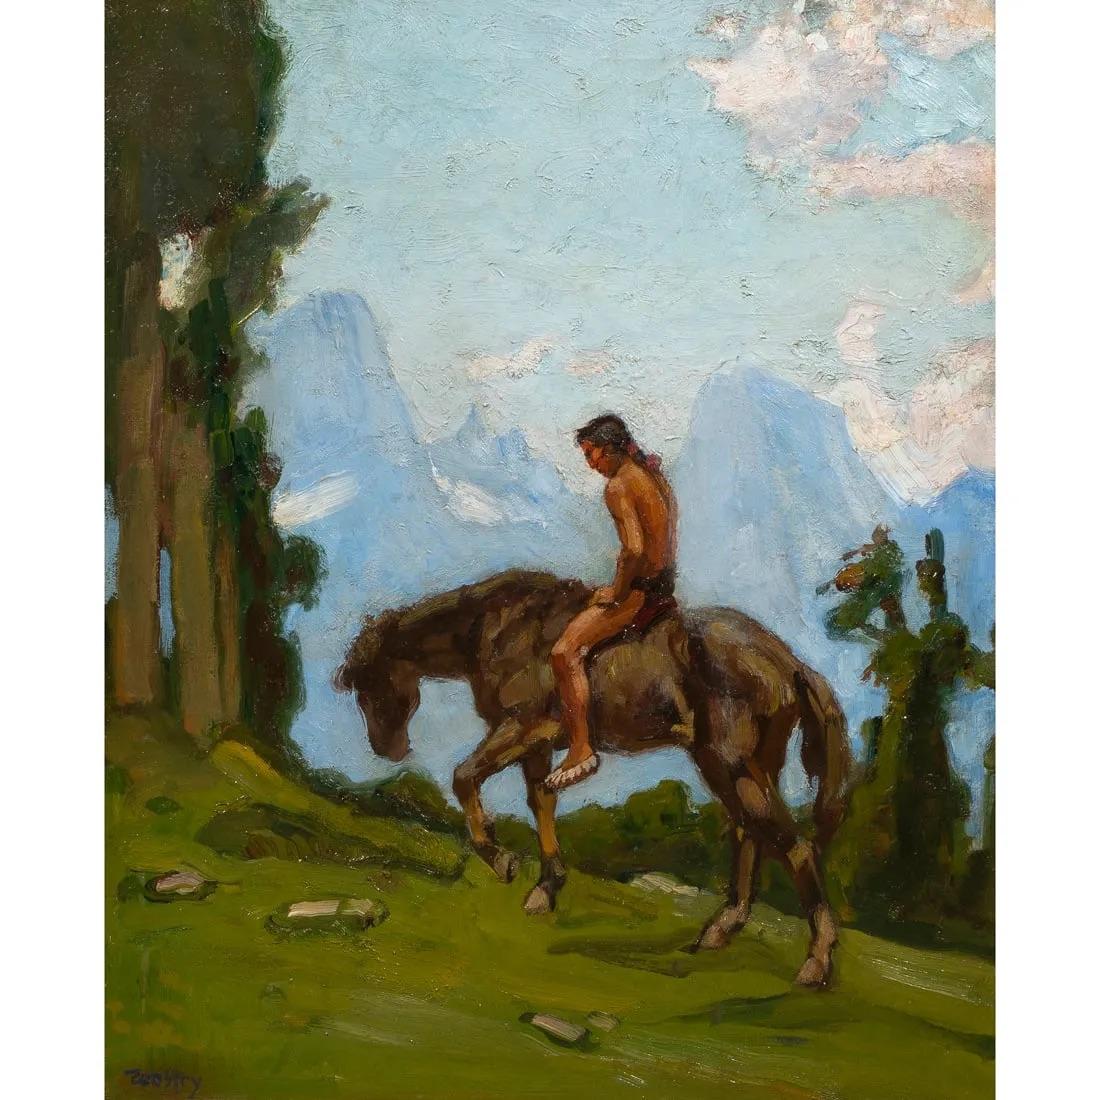 Cario Wostry (autrichien, 1865-1943), Indien à cheval, huile sur toile collée sur carton, signée en bas à gauche, carton : 24 